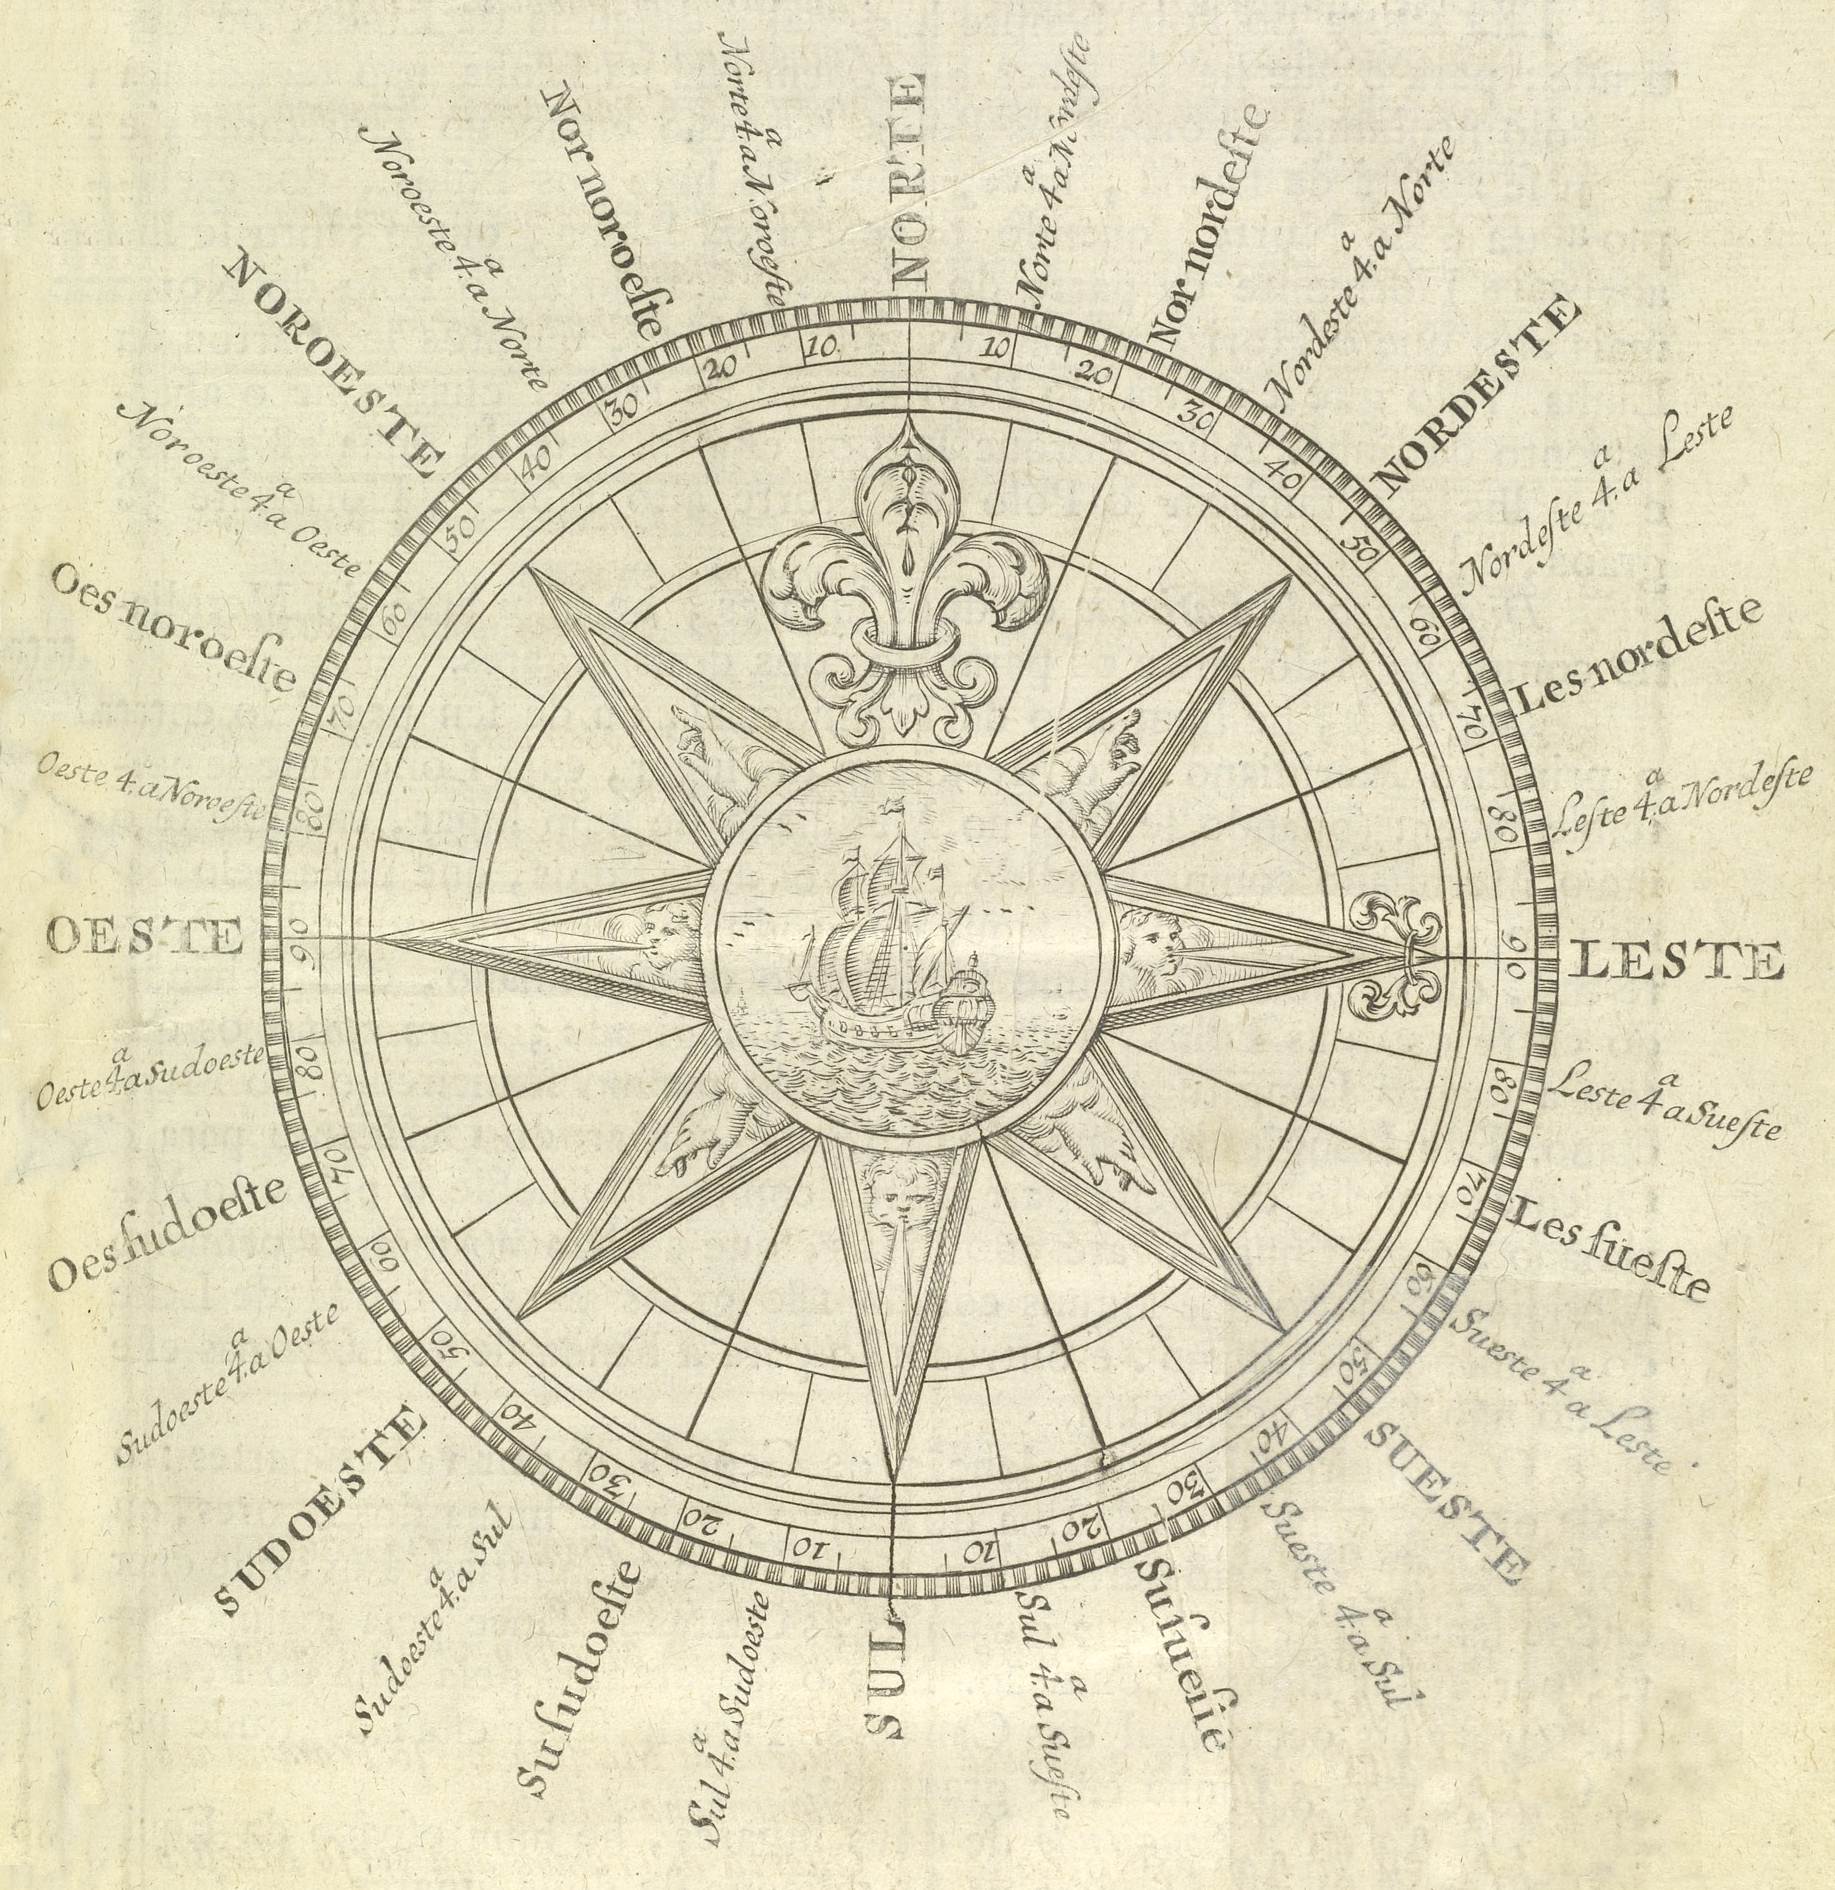 Imagem de antigo instrumento de localização, a rosa dos ventos, do livro de Manuel Pimentel, Arte de navegar (1762)